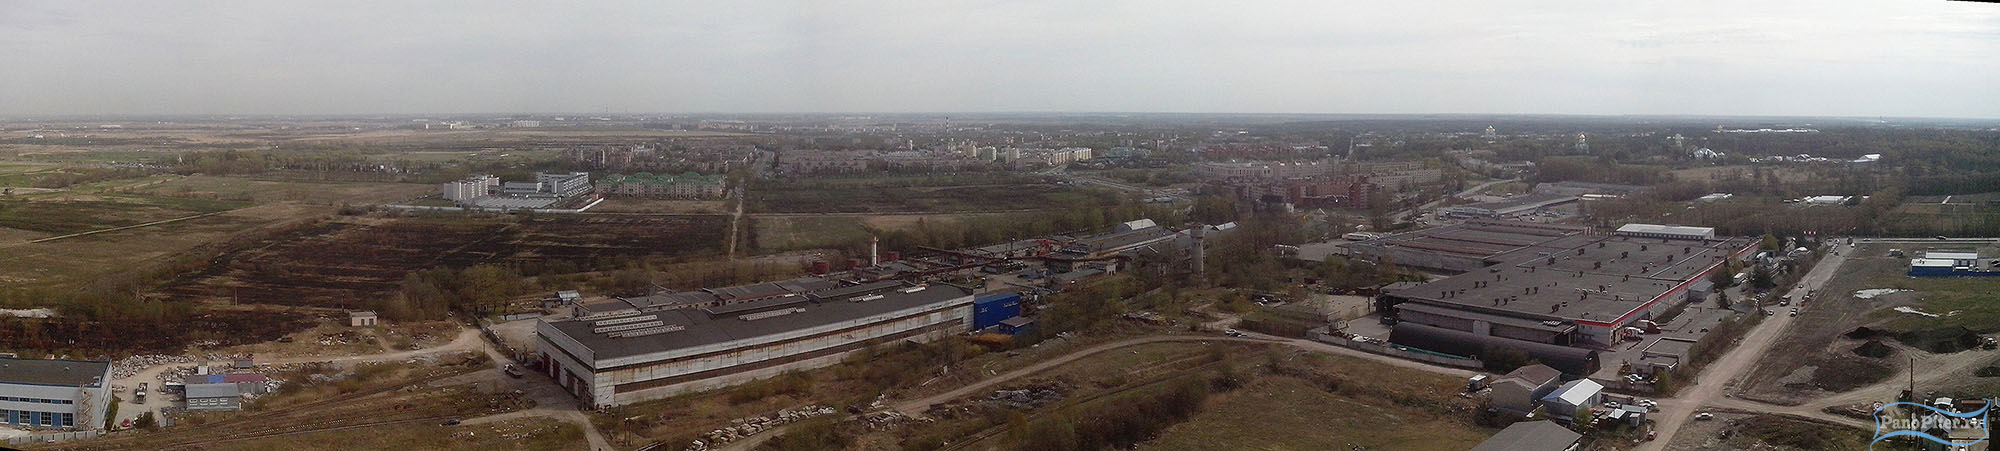 ТЭЦ на Кузьминском шоссе. Пушкин (2014 год)